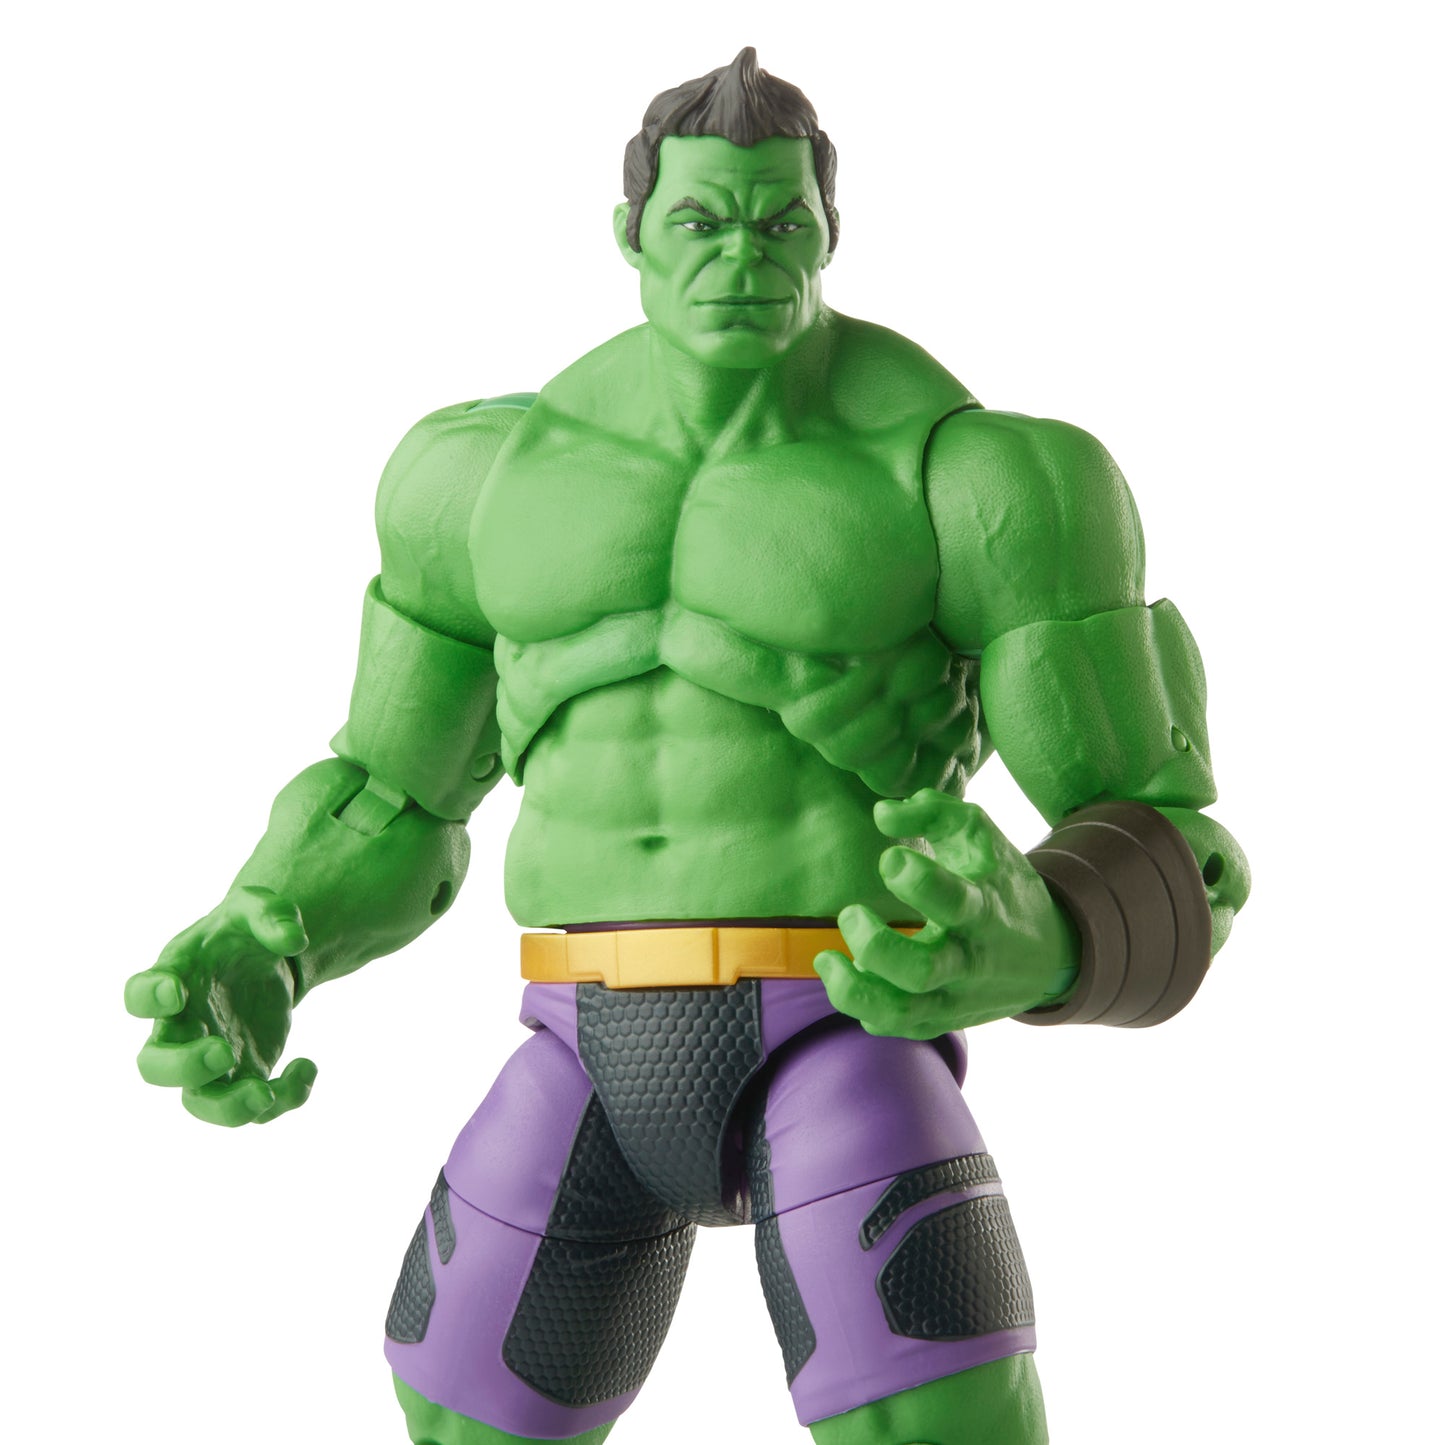 Hulk Action Figure - Heretoserveyou